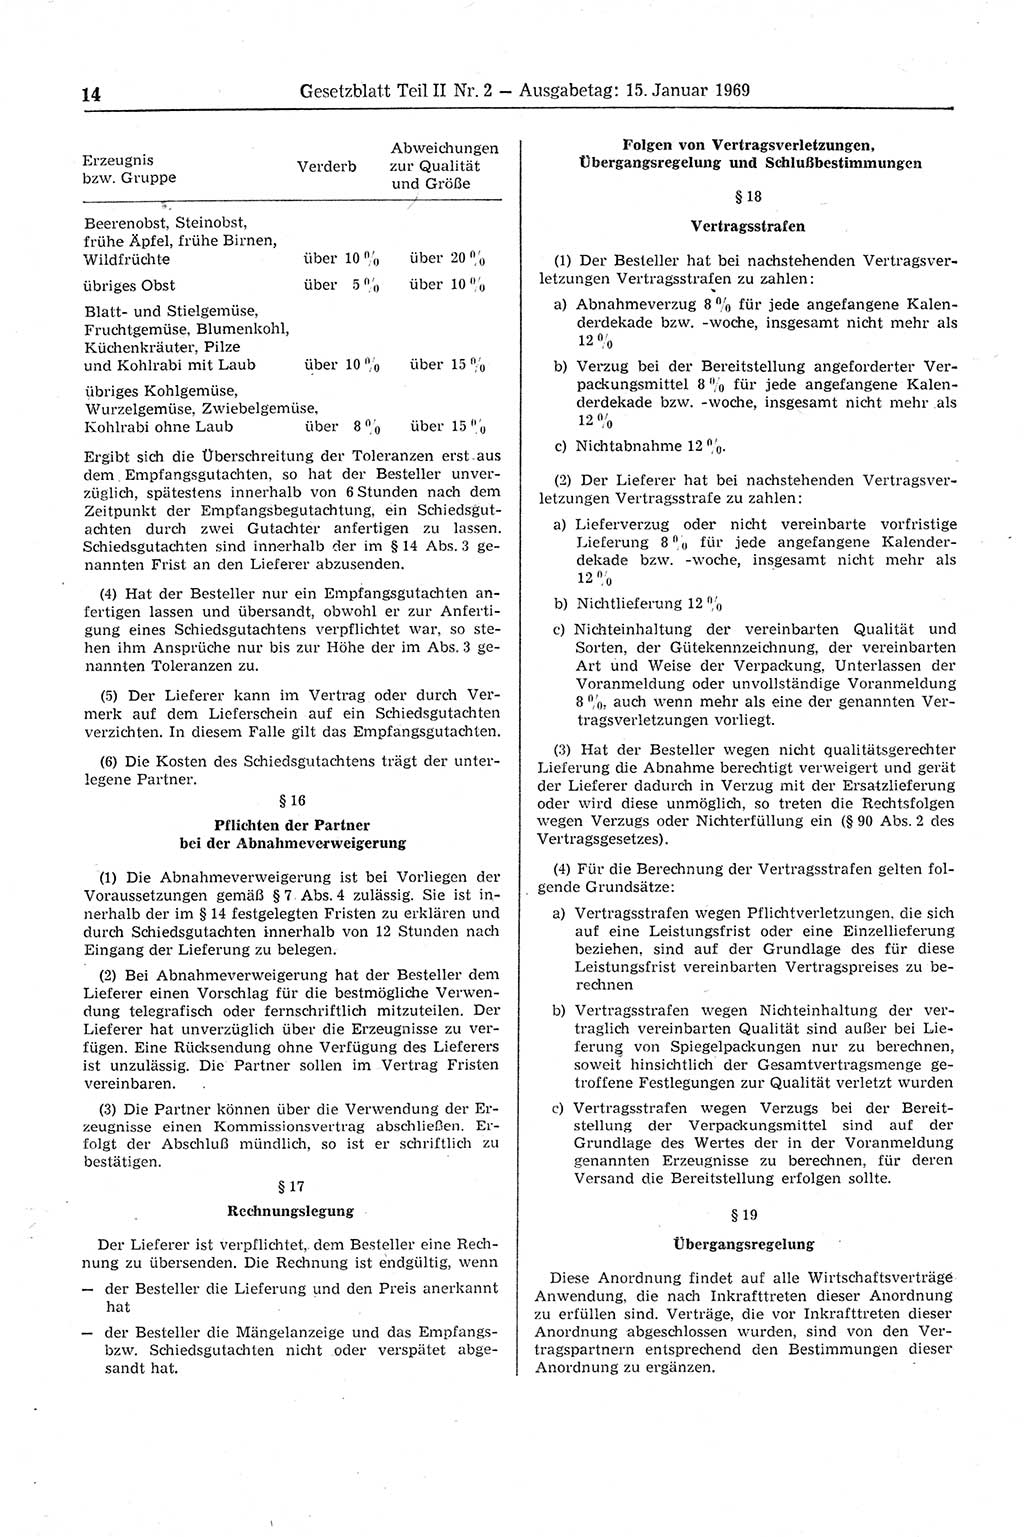 Gesetzblatt (GBl.) der Deutschen Demokratischen Republik (DDR) Teil ⅠⅠ 1969, Seite 14 (GBl. DDR ⅠⅠ 1969, S. 14)